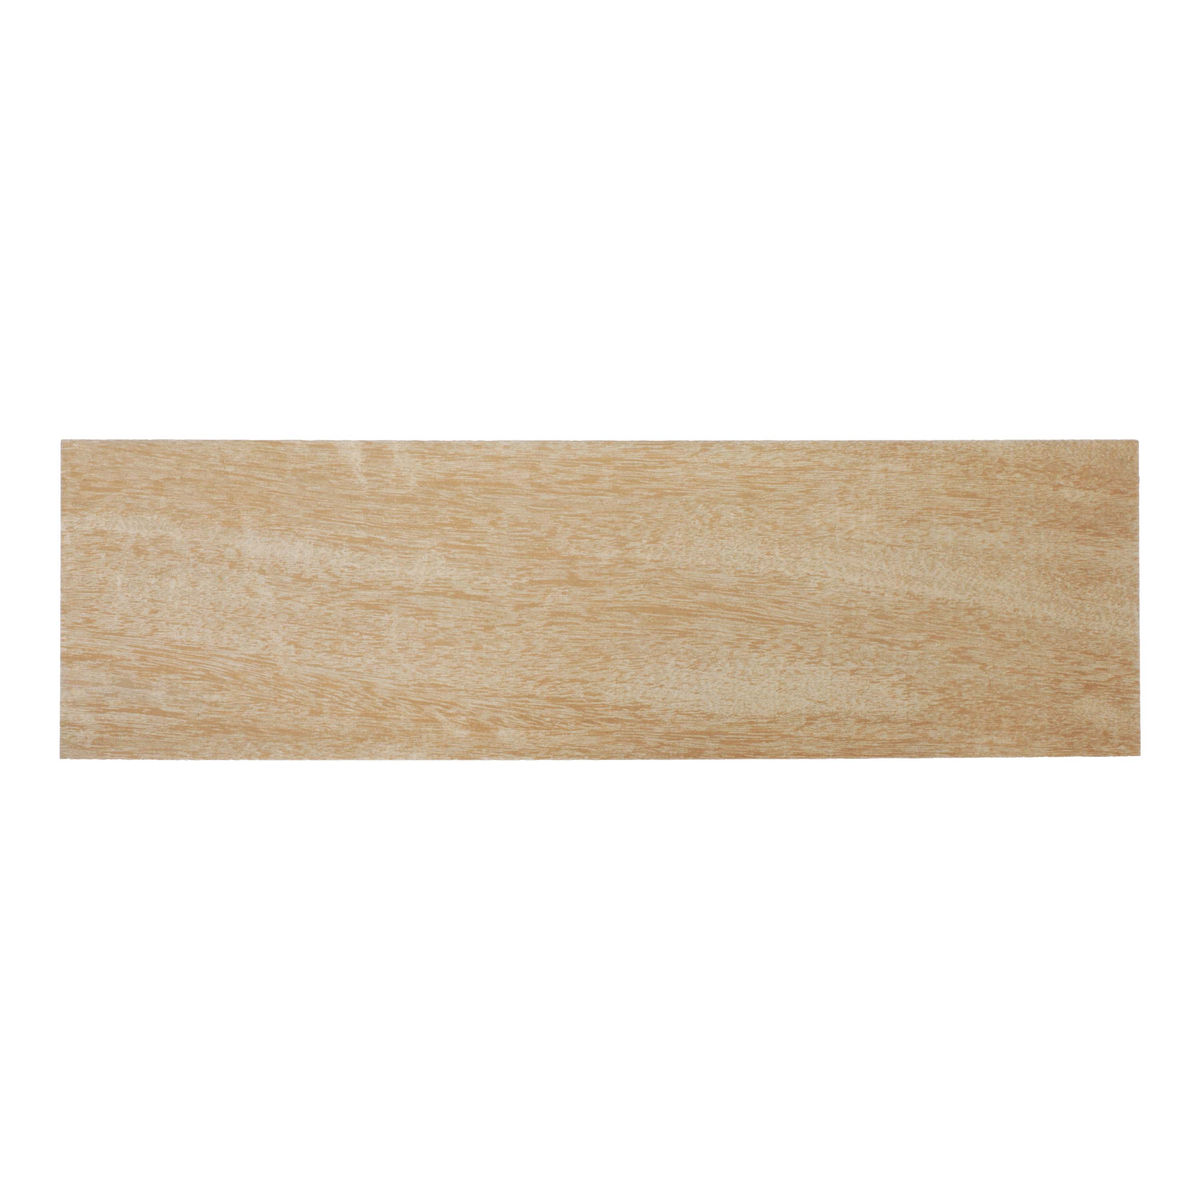 Deha Marco de madera Hamal 59,4x84,1 cm (A1) - pino natural sin tratar -  Cristal estándar